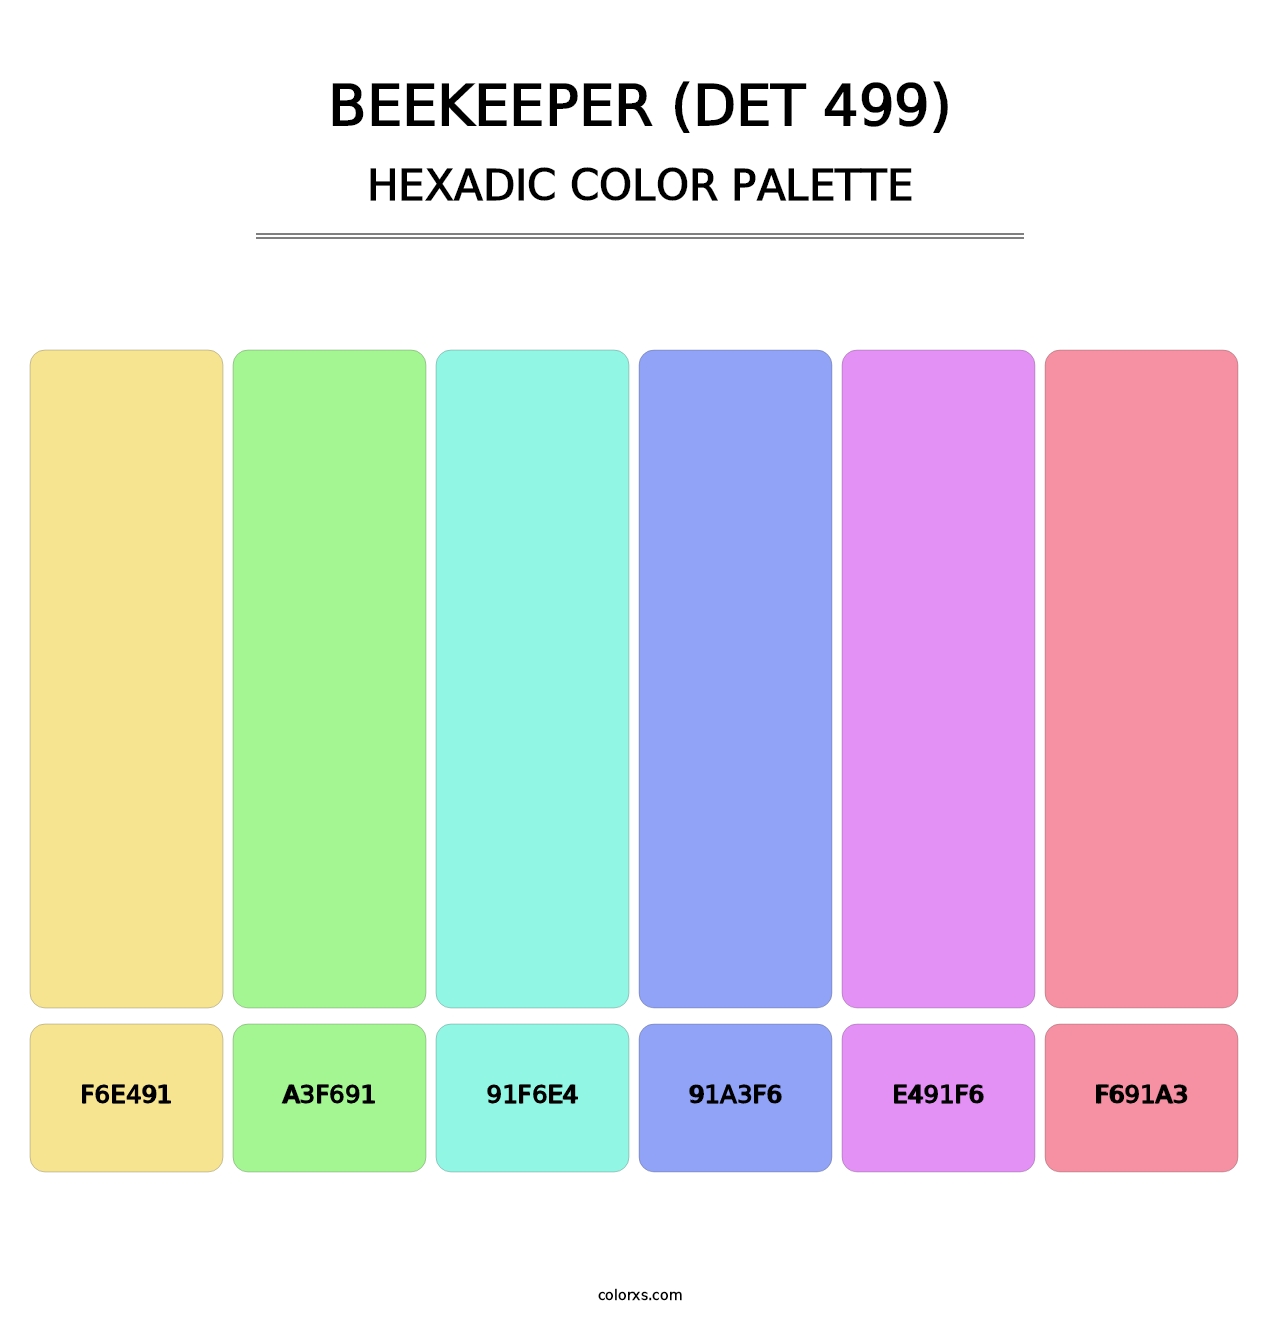 Beekeeper (DET 499) - Hexadic Color Palette